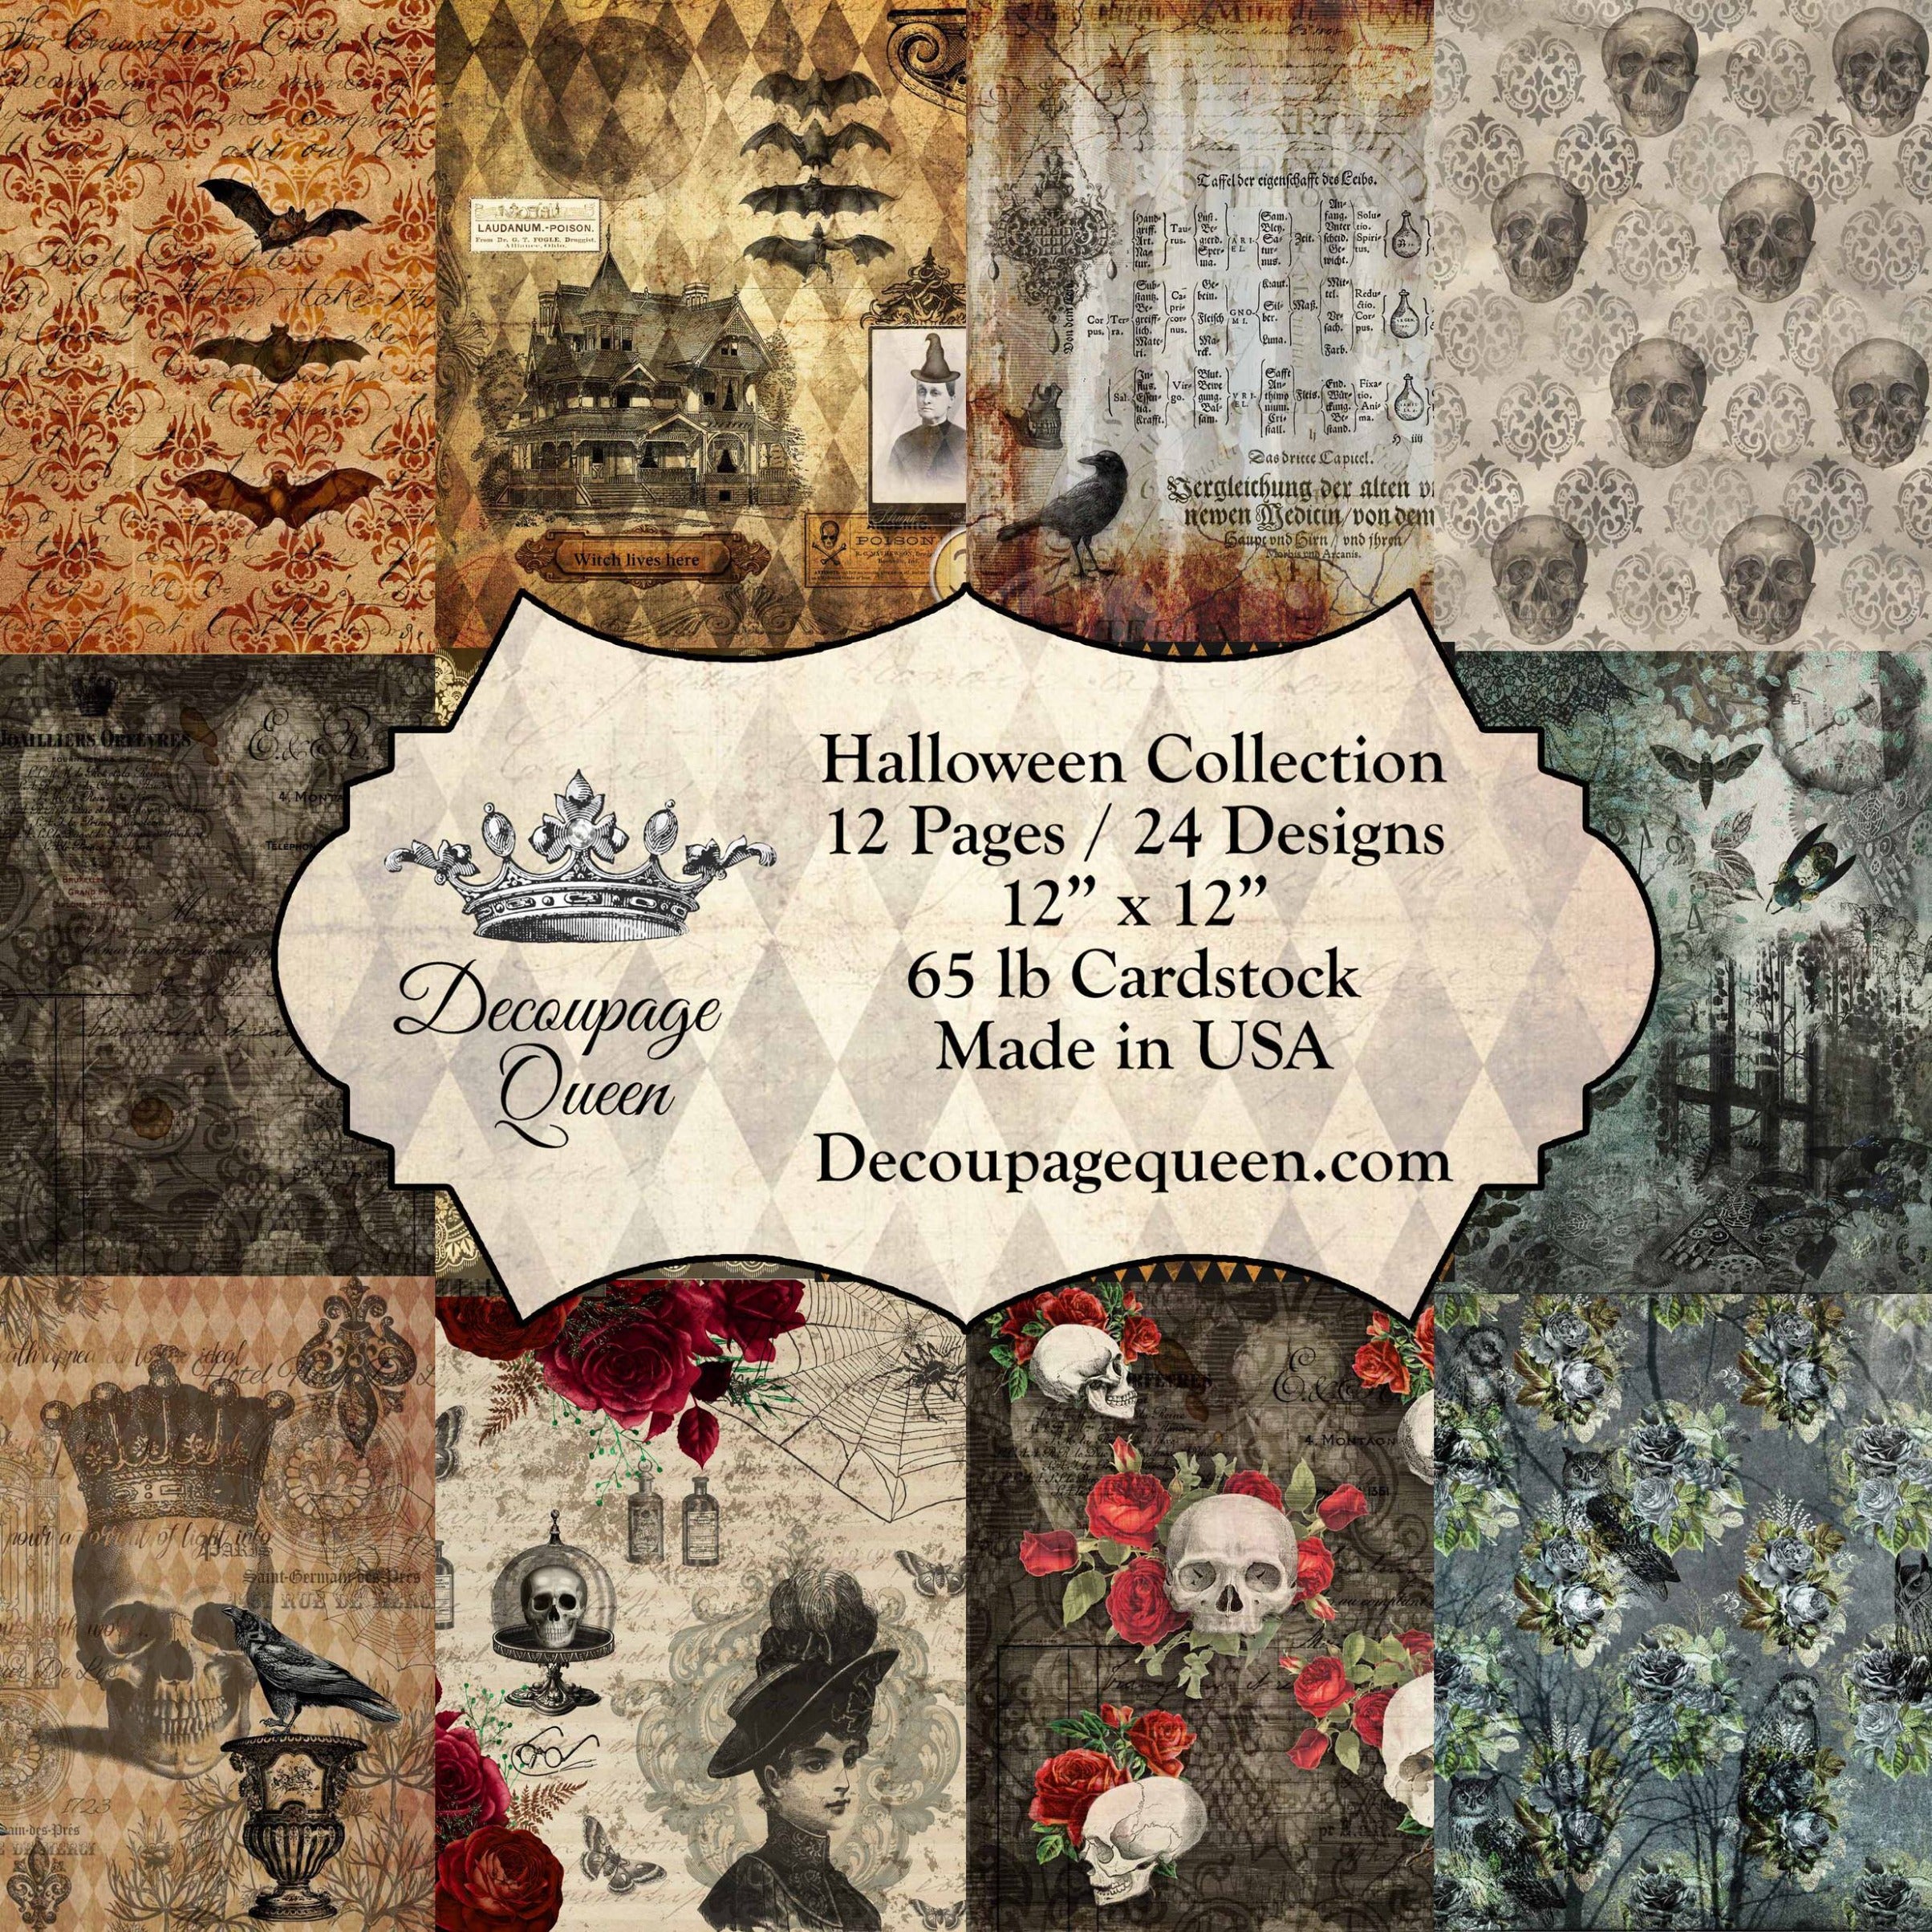 Halloween Collection Scrapbook Paper, Decoupage Queen, 24 Designs